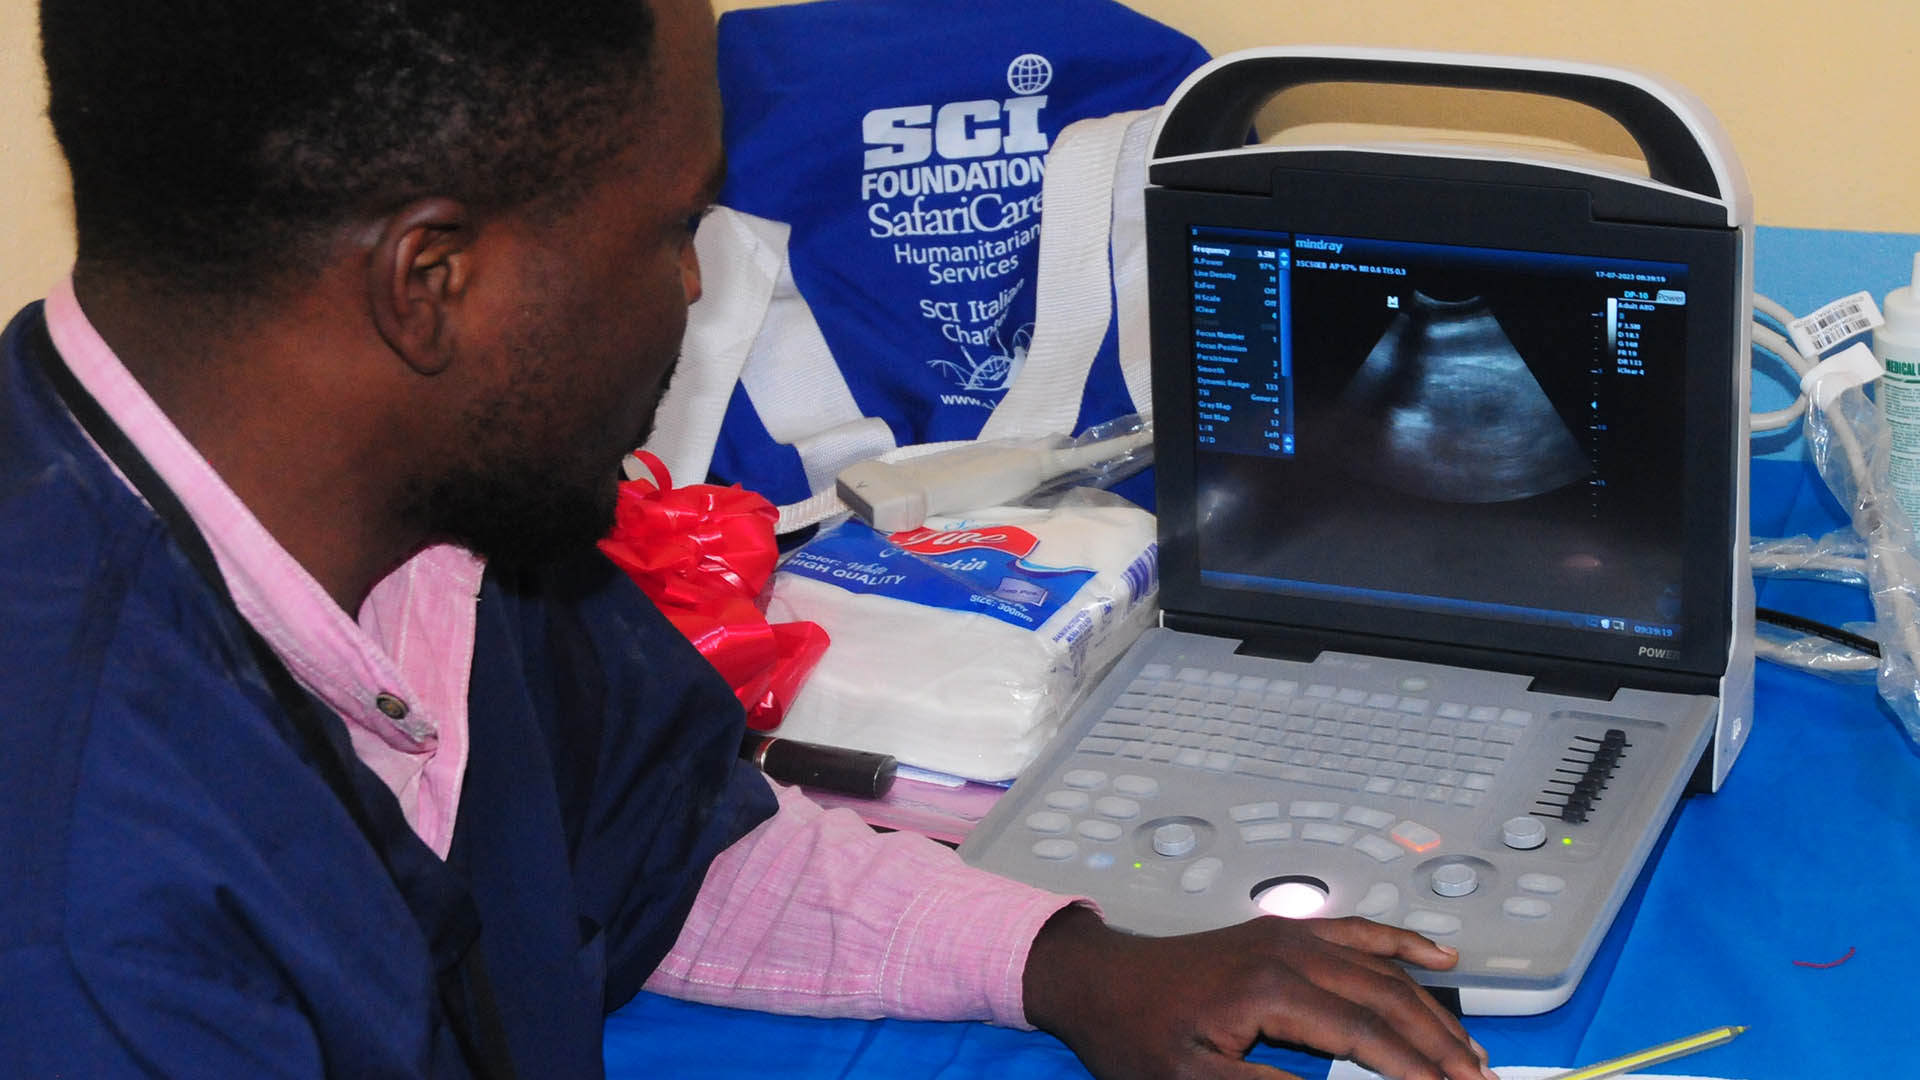 L'ecografo permetter di monitorare le gravidanze e i parti e auspicabilmente di ridurre il tasso di mortalit pre e post partum, particolarmente elevata in questa zona d'Africa